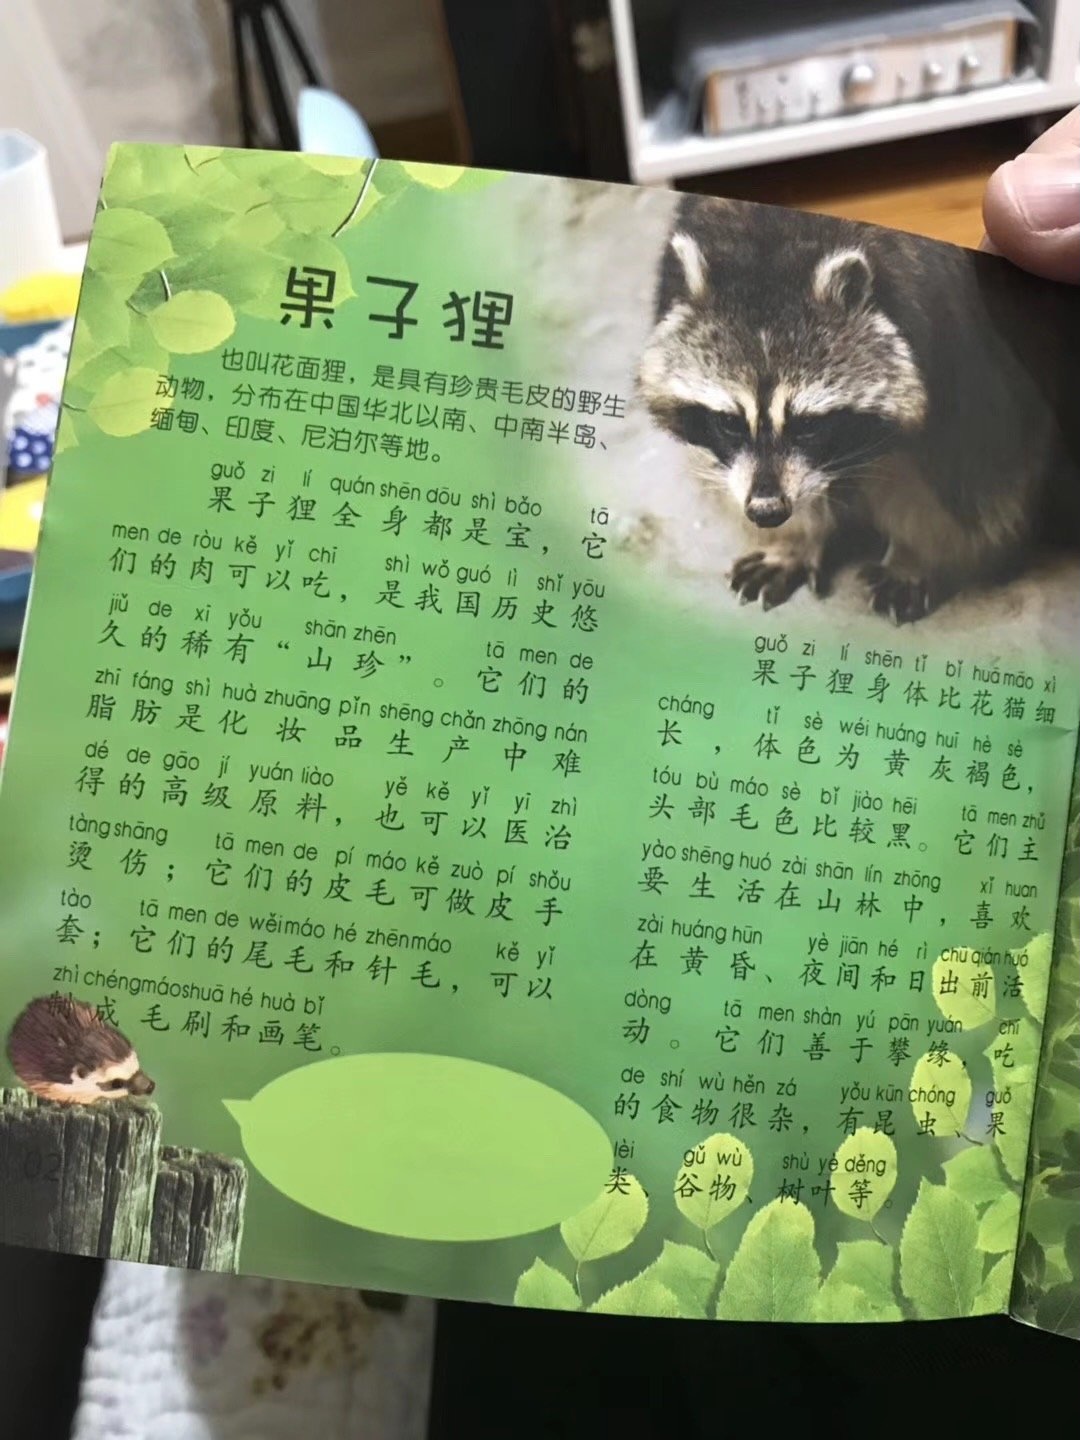 武大出版社一儿童刊物称果子狸可吃 回应 已下架